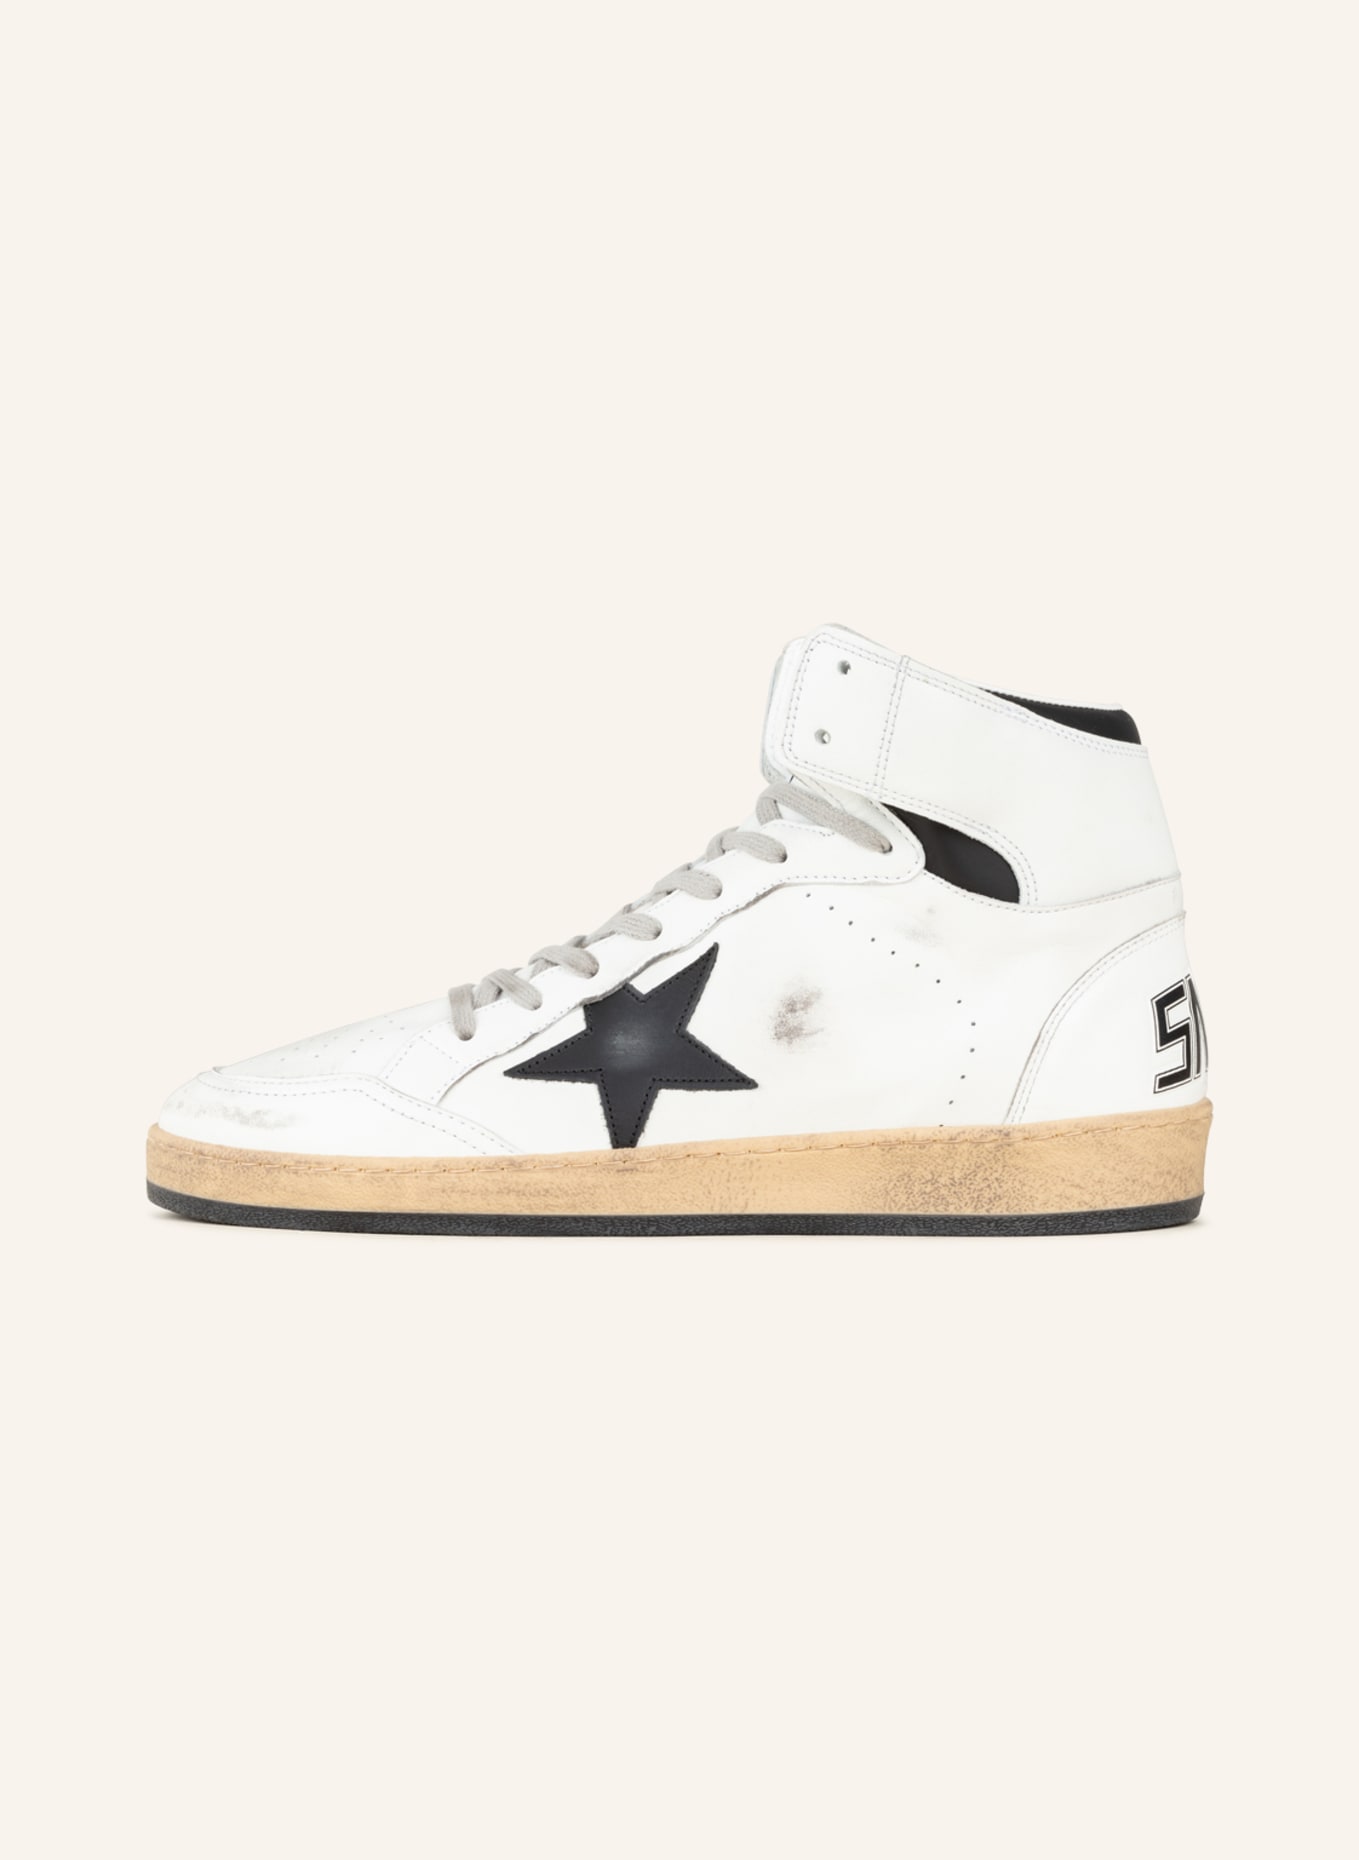 GOLDEN GOOSE Hightop-Sneaker SKY-STAR, Farbe: WEISS/ SCHWARZ (Bild 4)